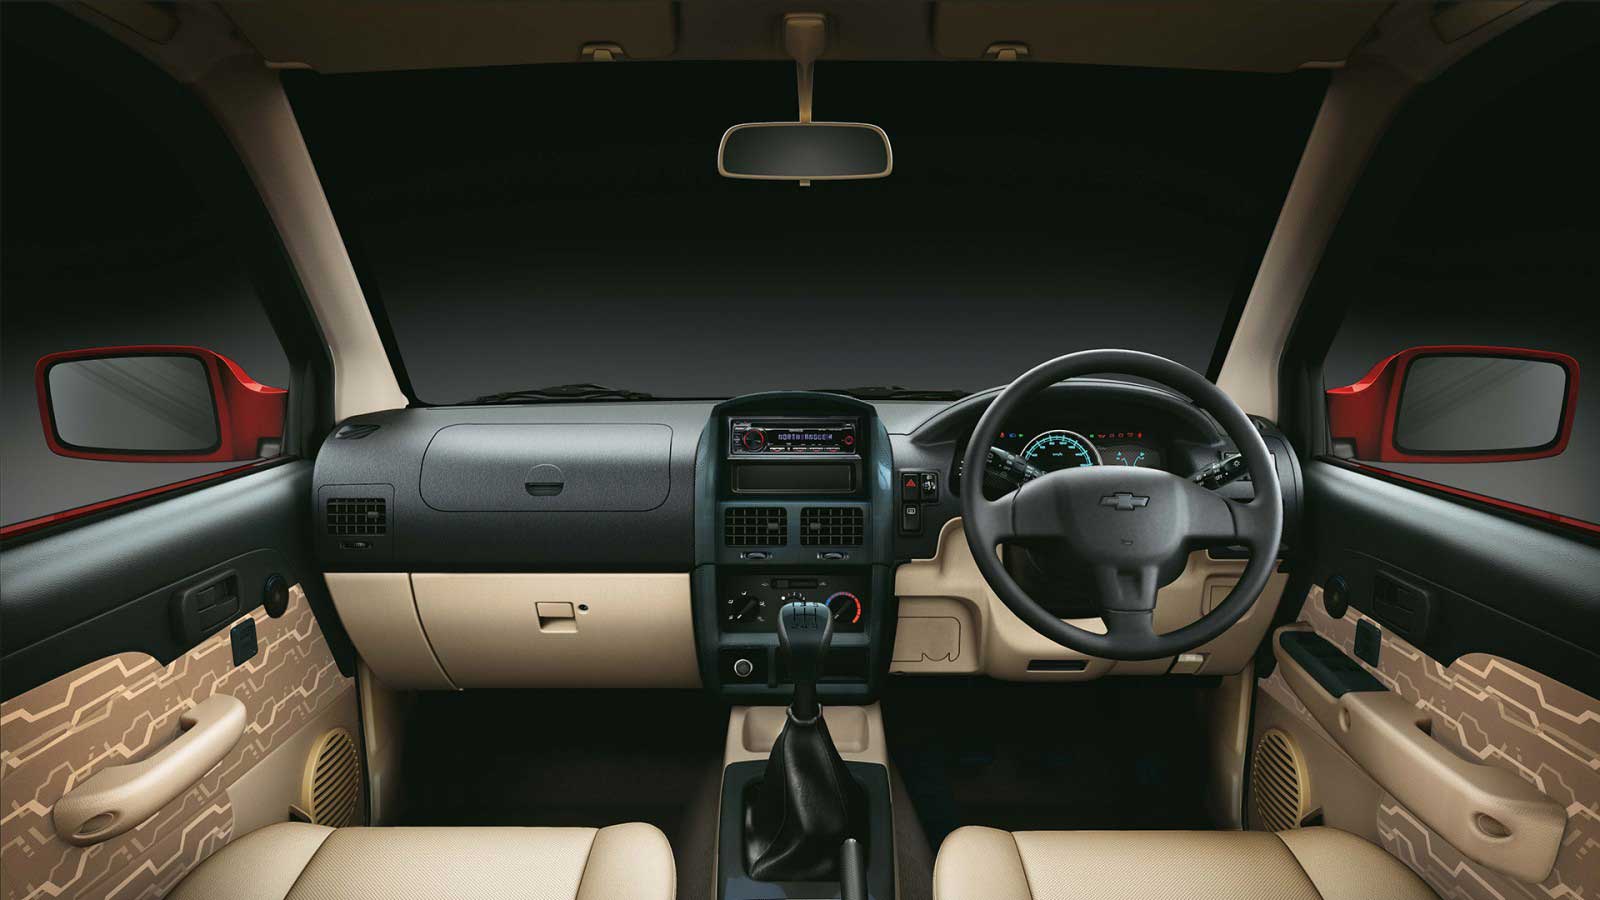 Chevrolet Tavera Neo 3 LT 9 STR BSIII Interior front view